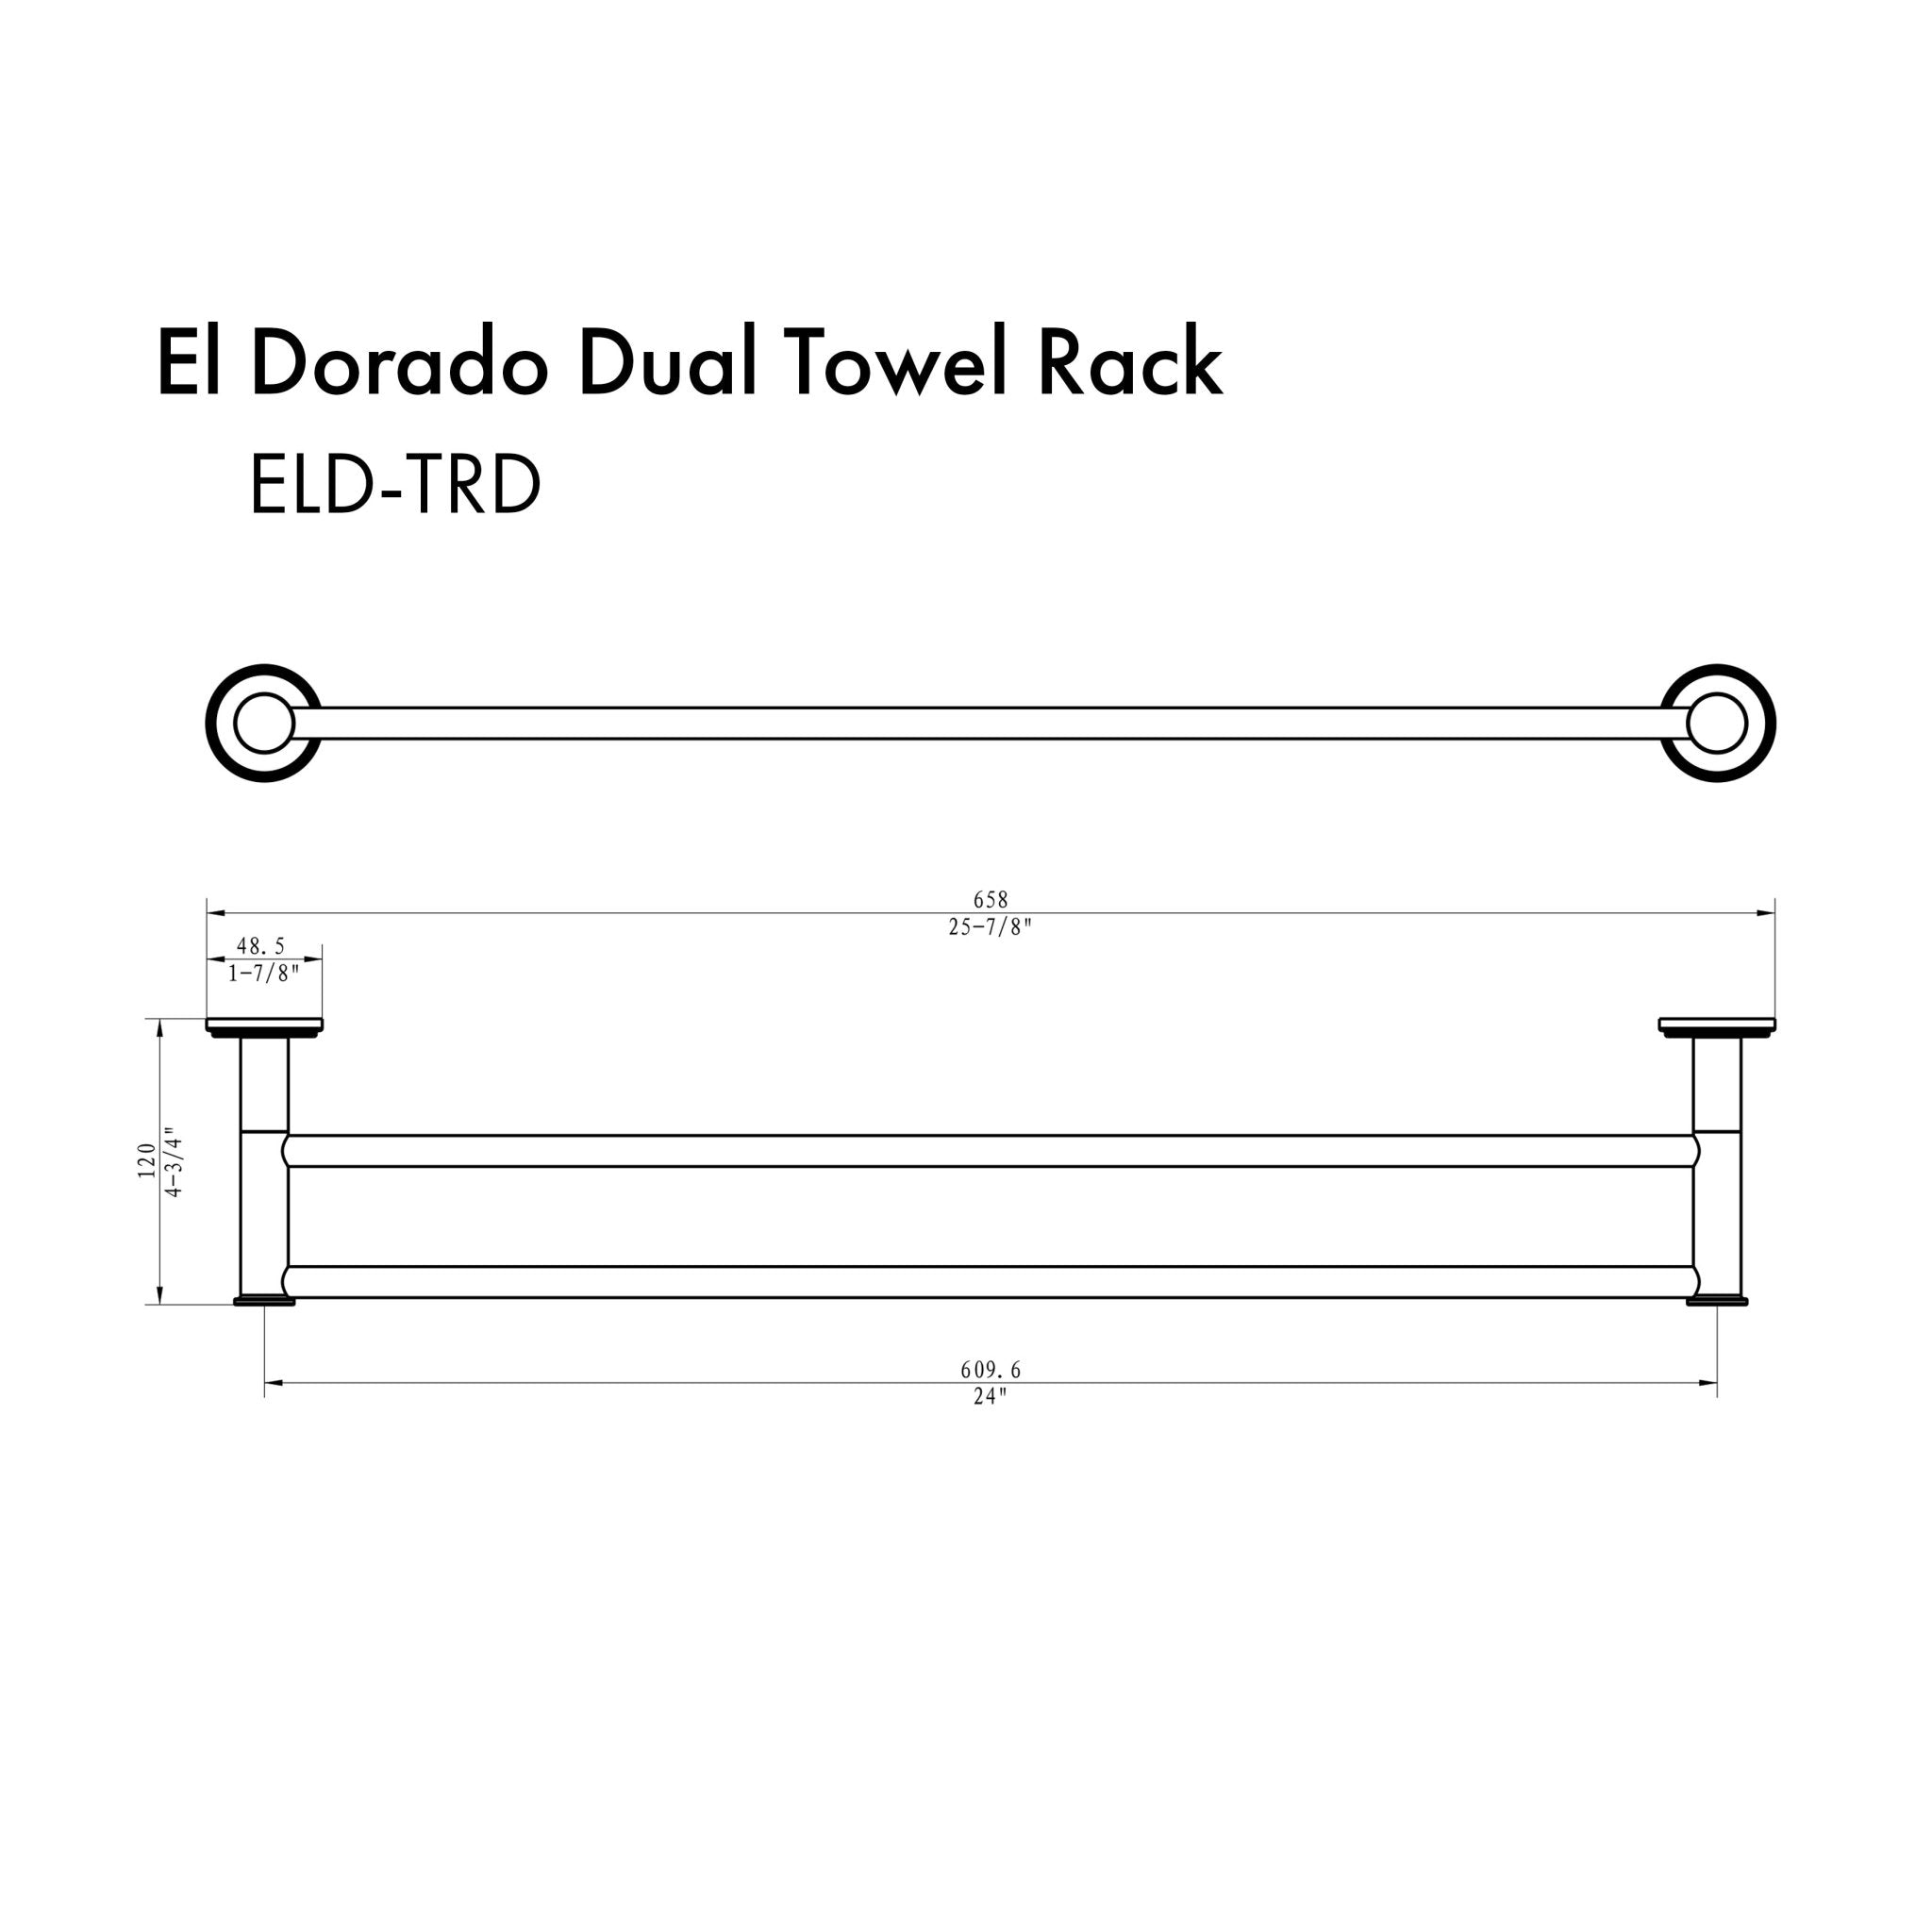 ZLINE El Dorado Double Towel Rail with color options (ELD-TRD) dimensional diagram